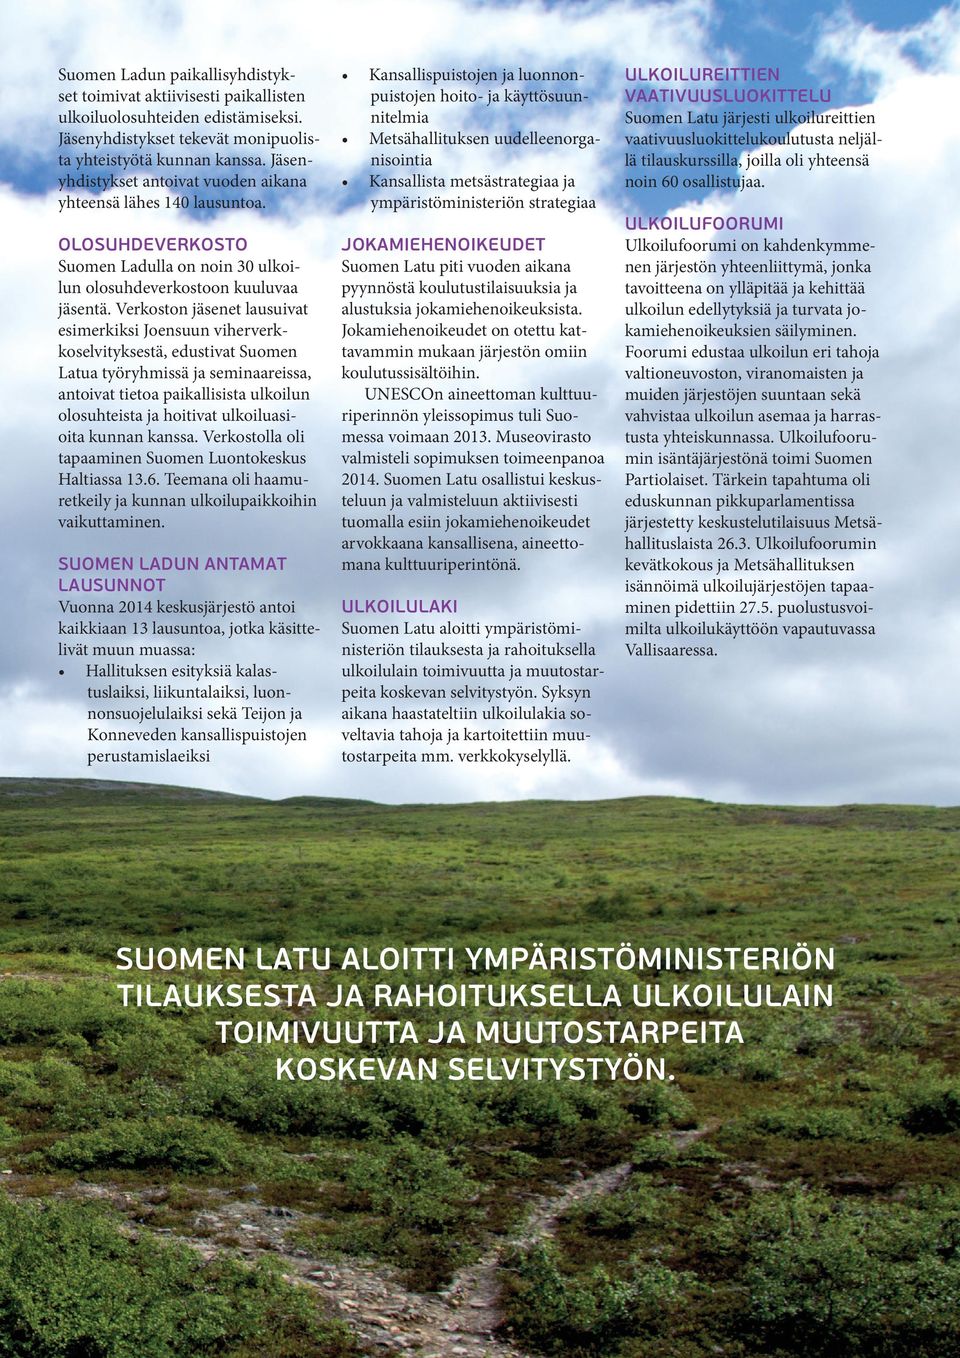 Kansallispuistojen ja luonnonpuistojen hoito- ja käyttösuunnitelmia Metsähallituksen uudelleenorganisointia Kansallista metsästrategiaa ja ympäristöministeriön strategiaa Olosuhdeverkosto Suomen